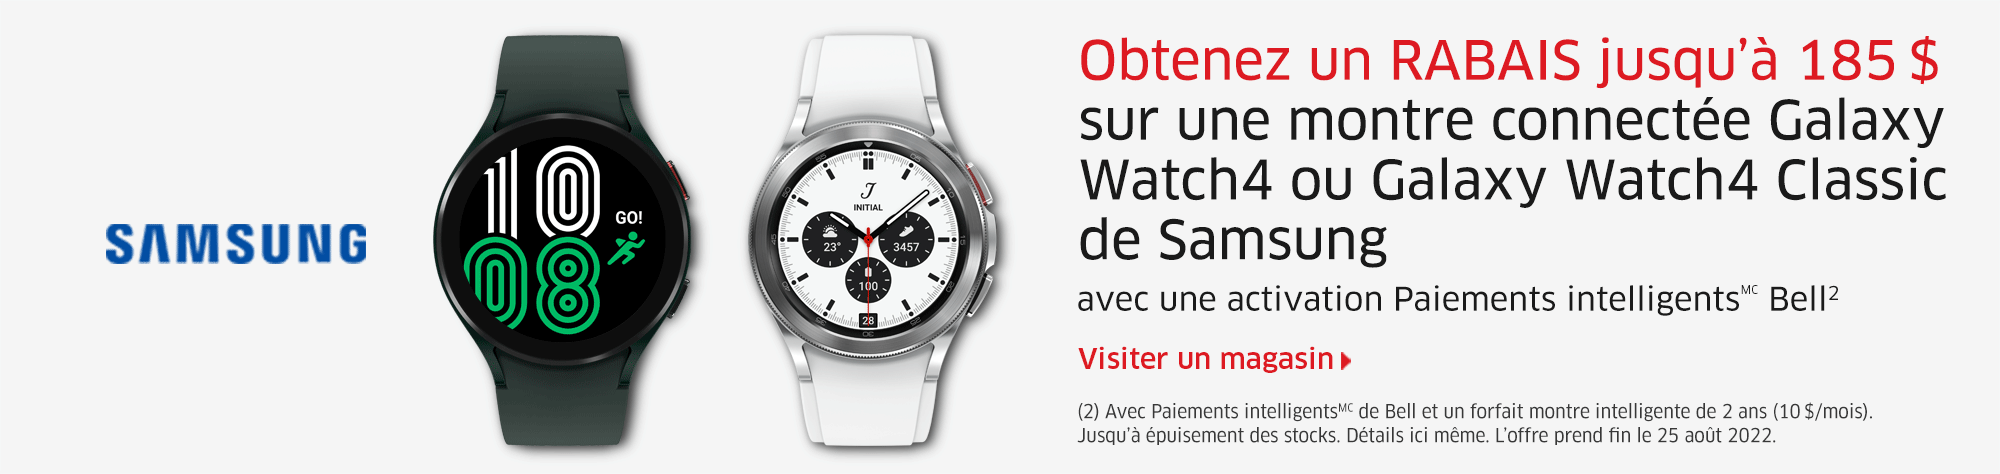 Obtenez un RABAIS jusqu’à 185 $ sur une montre connectée Galaxy Watch4 ou Galaxy Watch4 Classic de Samsung avec une activation Paiements intelligentsMC Bell2  Visiter un magasin